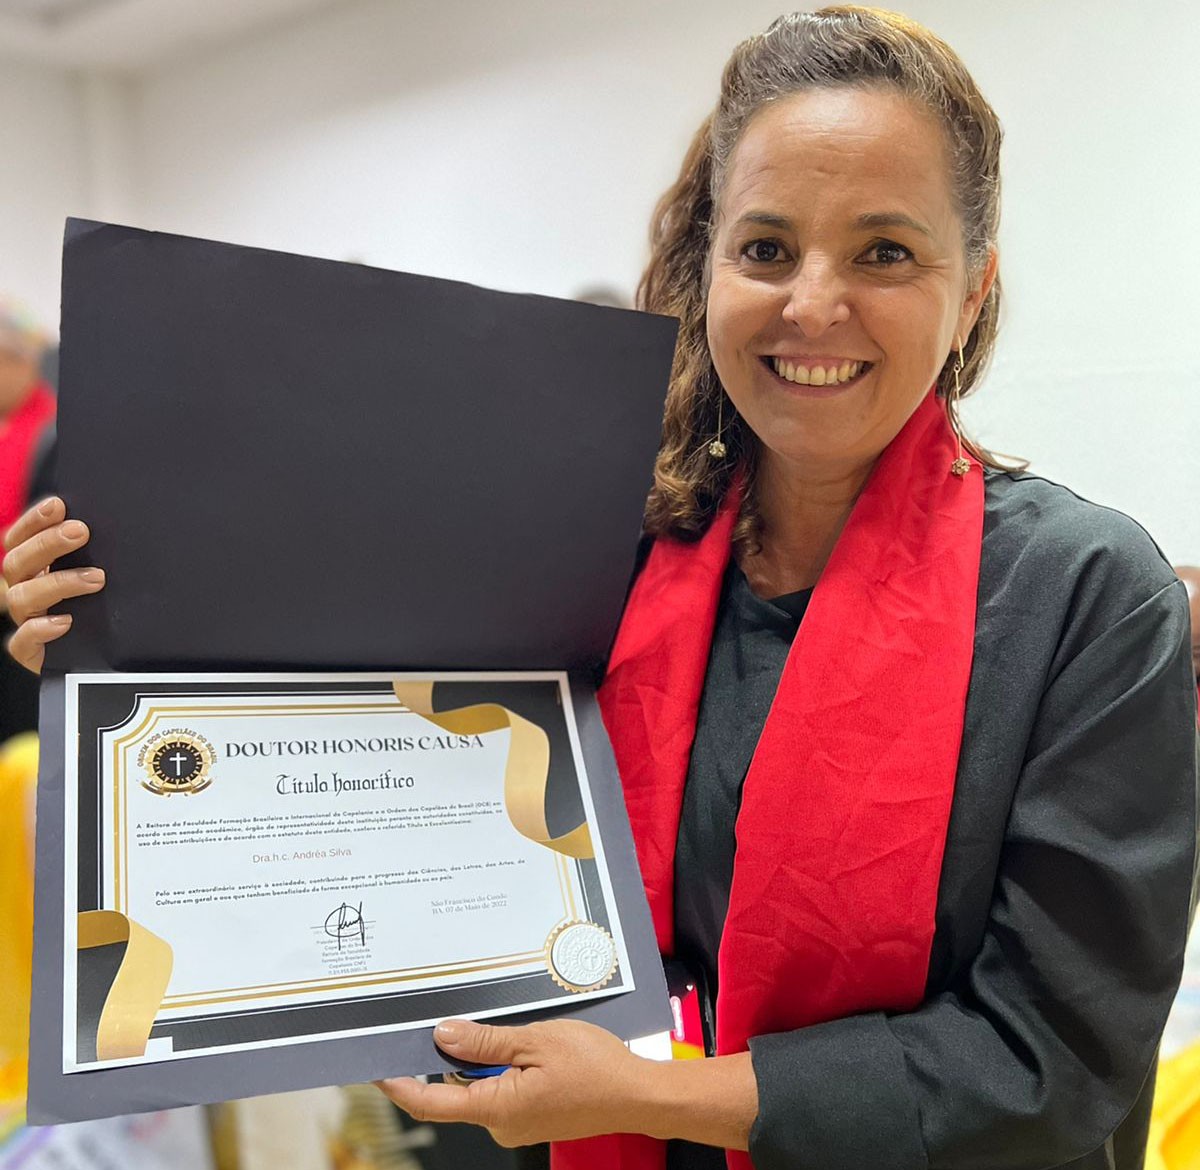 Jornalista Andréa Silva recebe título doutor honoris causa na Bahia